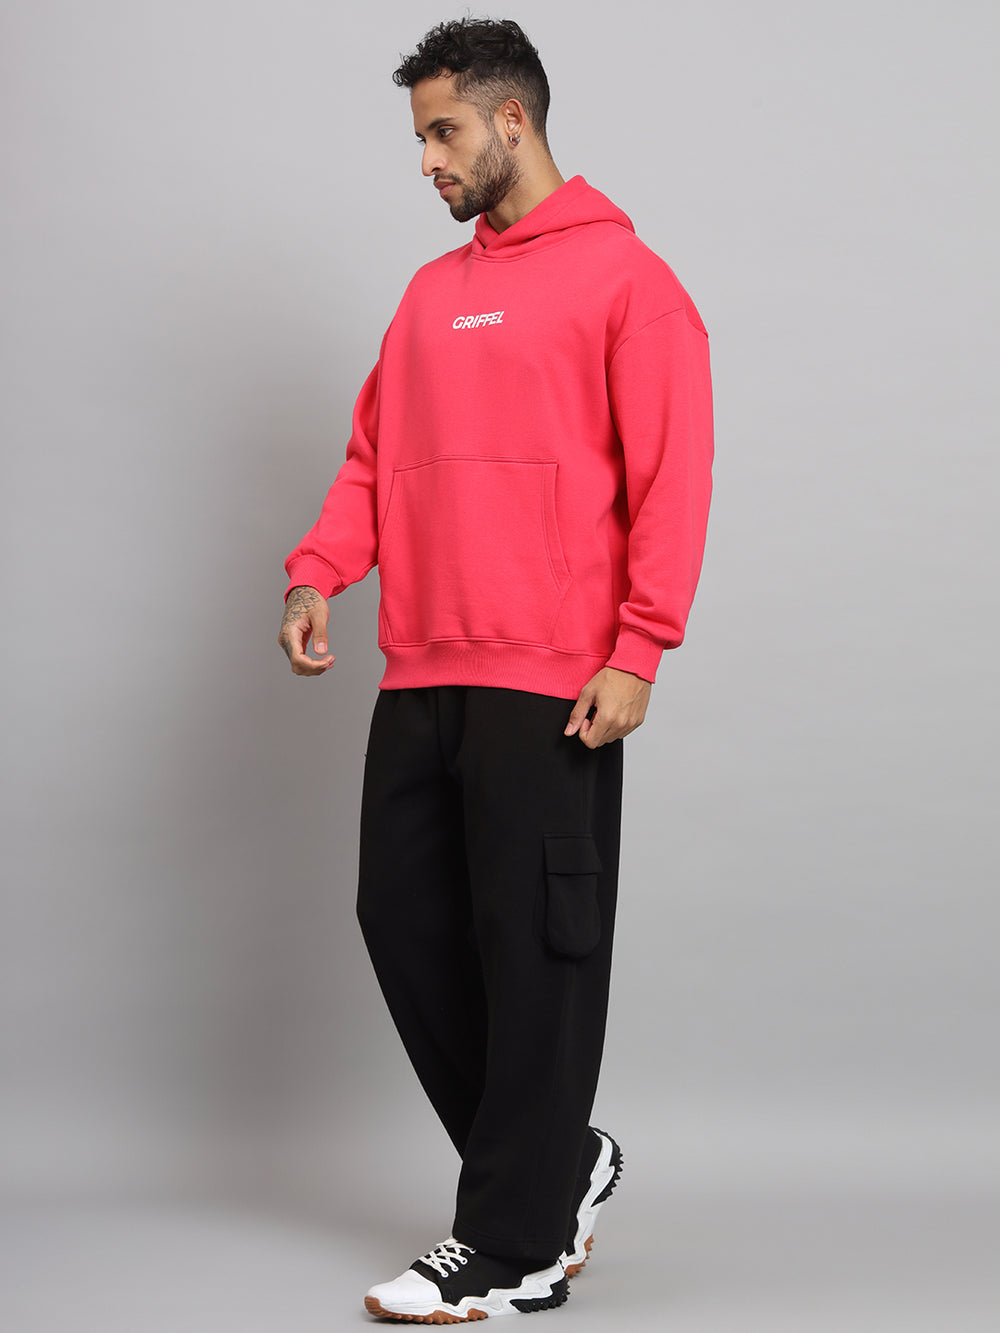 Griffel Men's Neon Pink Front Logo Oversized Fleece Hoodie Sweatshirt - griffel